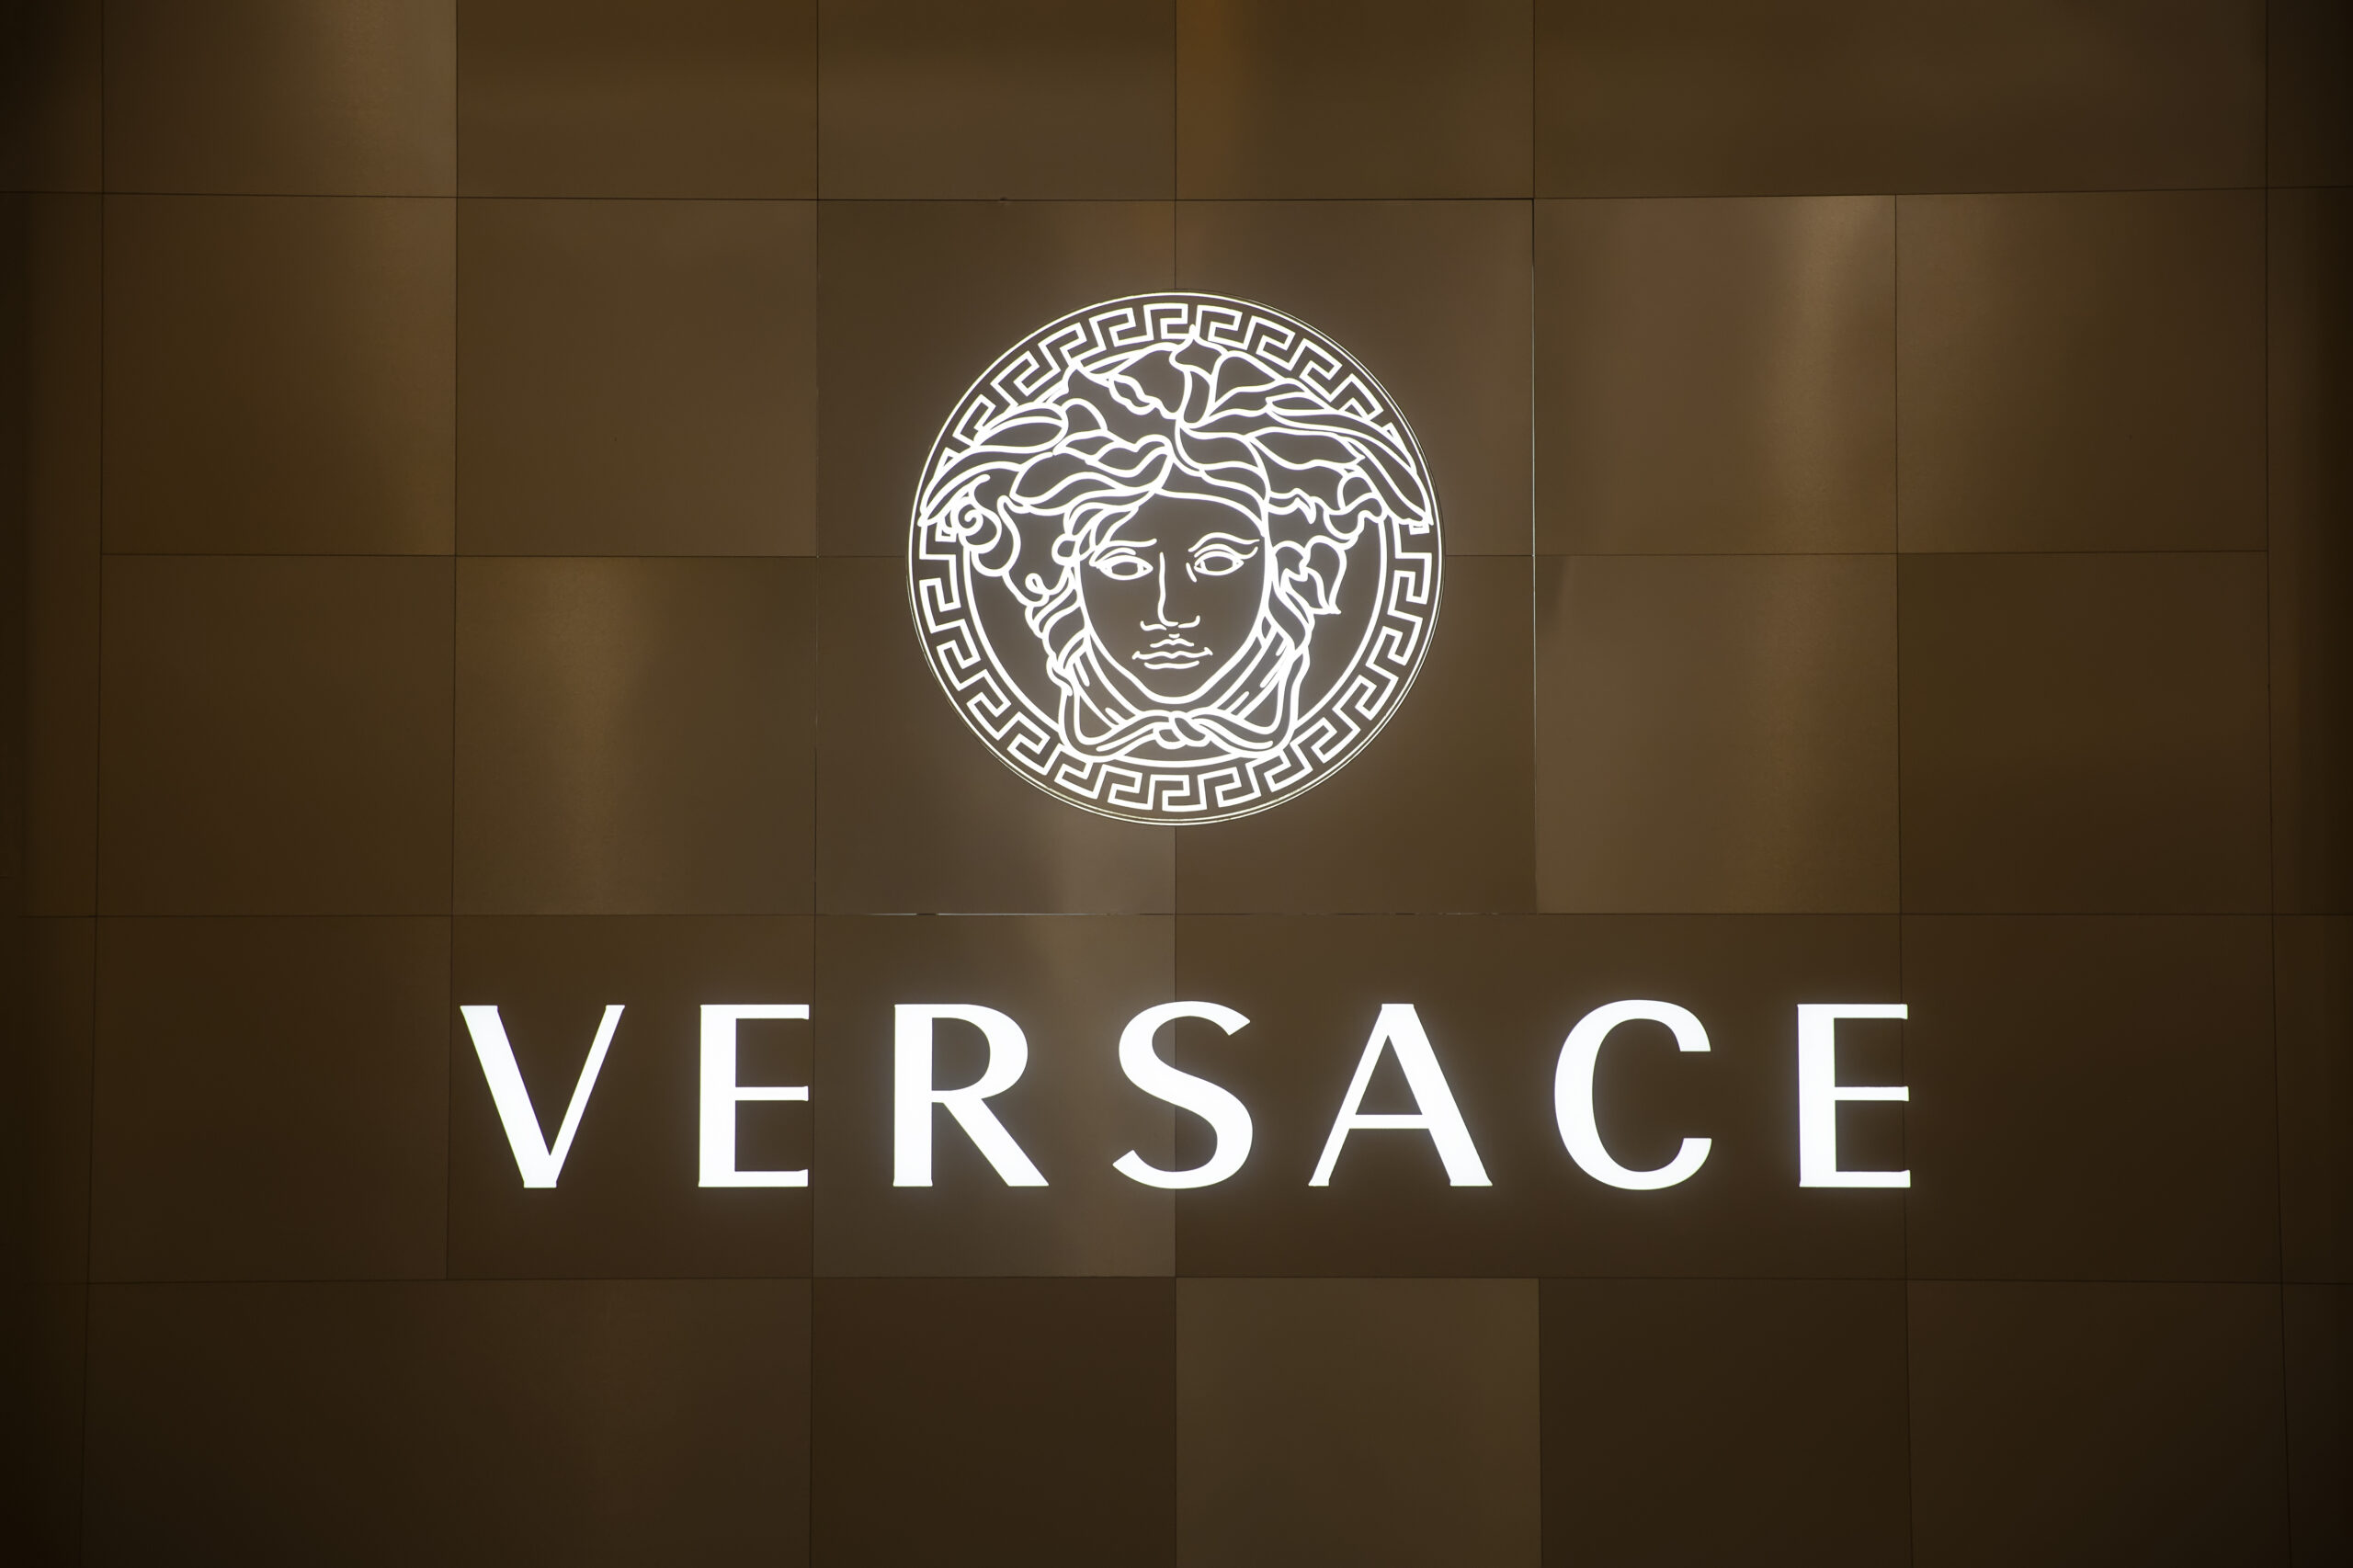 Versace - rodzinna firma światowej sławy